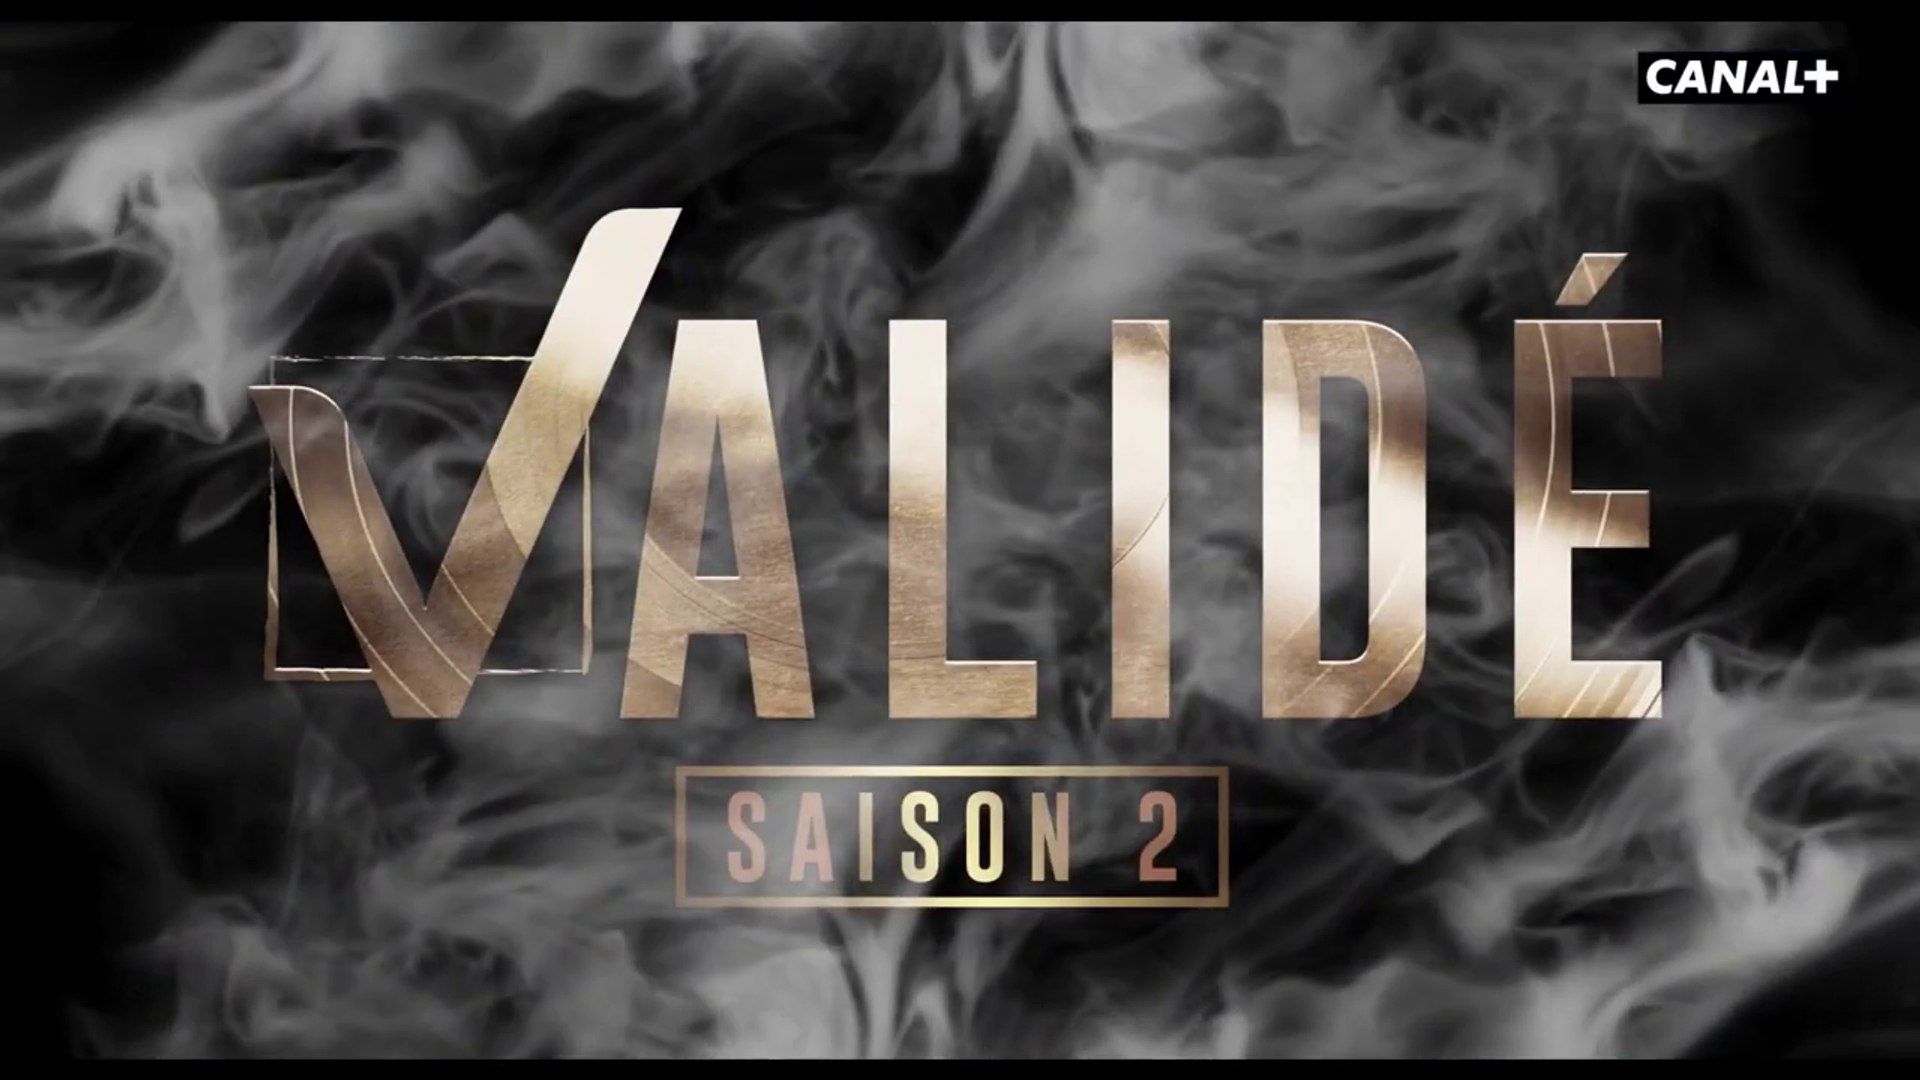 Validé saison 2 (Canal+) bande-annonce - Vidéo Dailymotion